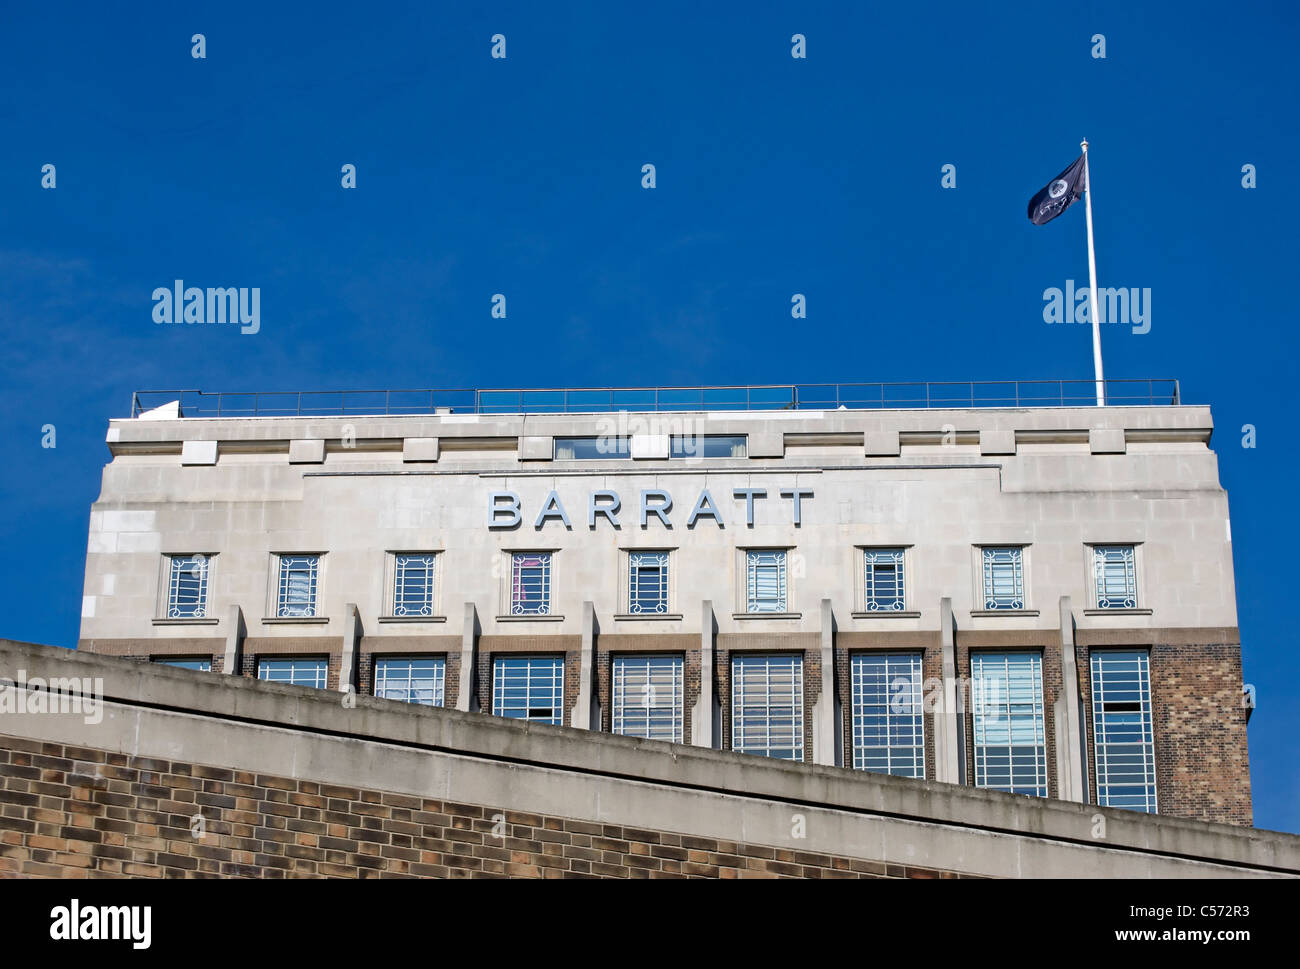 Barratt logo sur les années 1930 wallis chambre, une partie de l'ancien bâtiment beechams sur la Great West Road, Brentford, Londres, Angleterre Banque D'Images